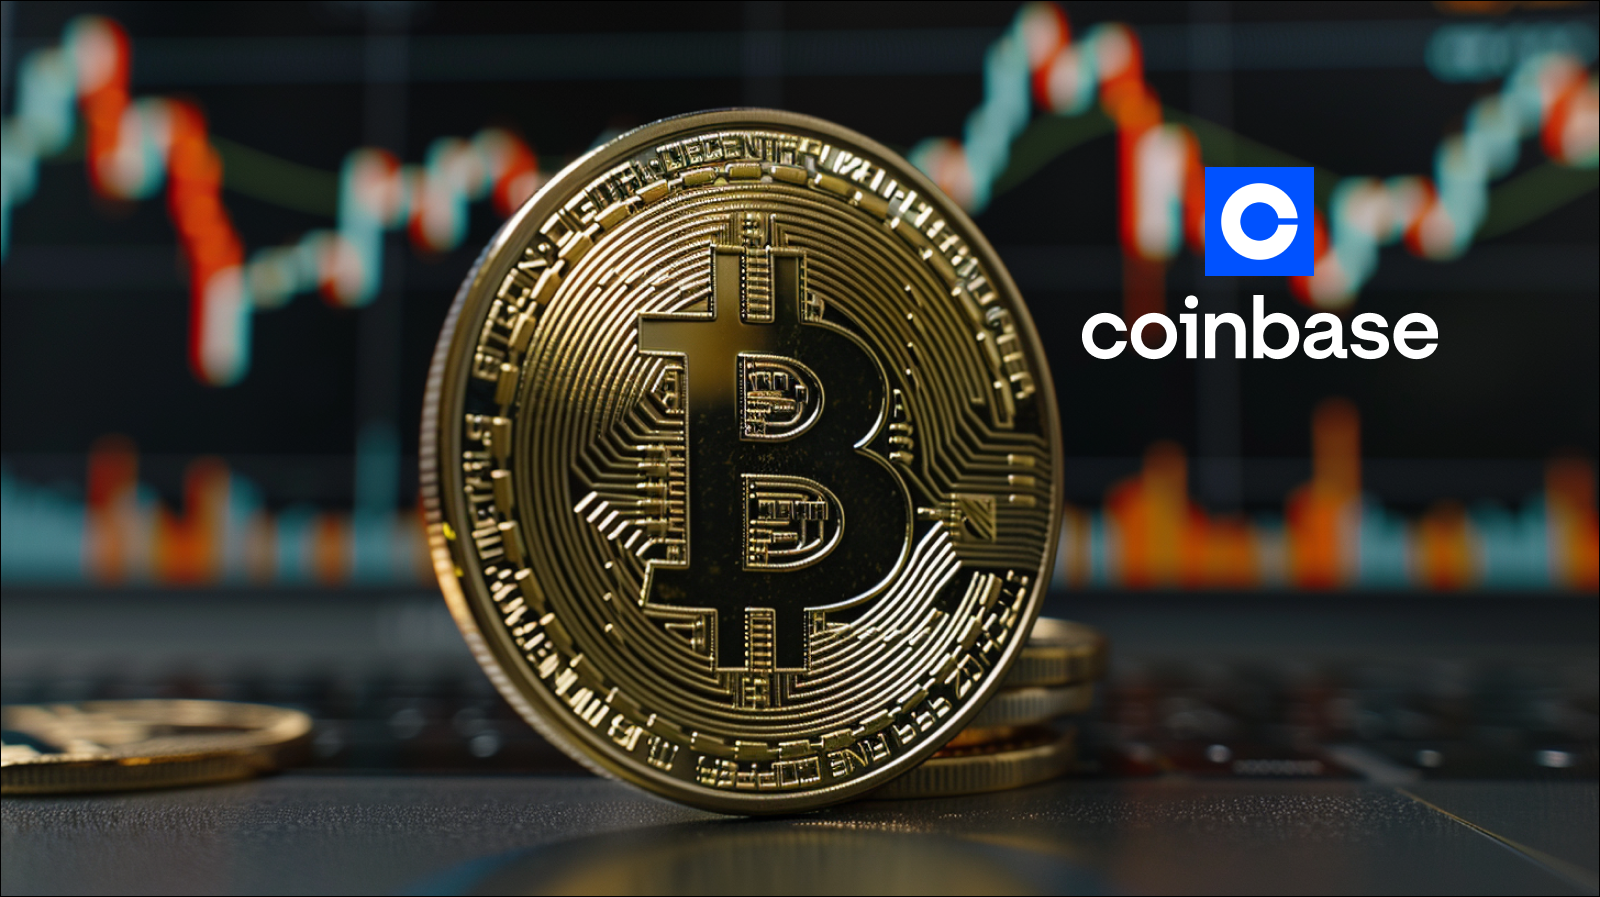 Eine goldene Bitcoin-Münze im Vordergrund mit dem Coinbase-Logo im Hintergrund, überlagert von einem unscharfen Börsenchart.